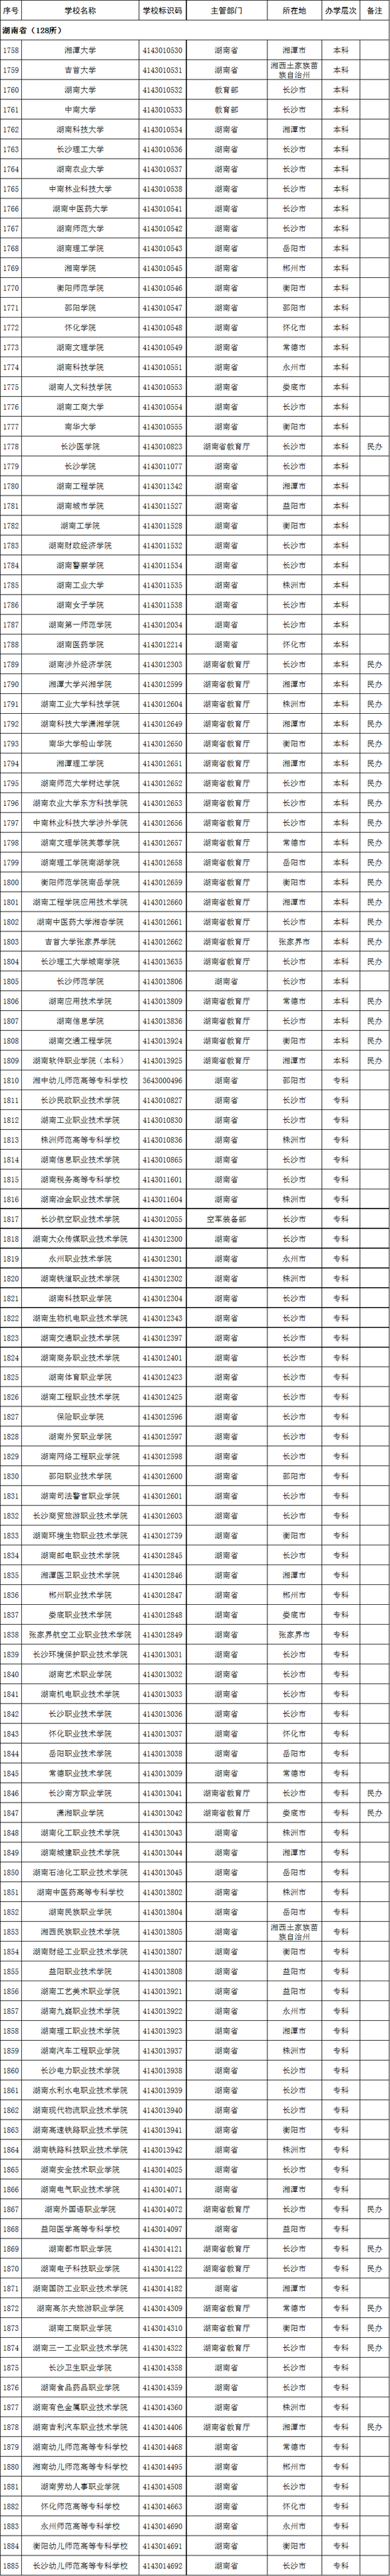 湖南省2020年高校名单(128所)